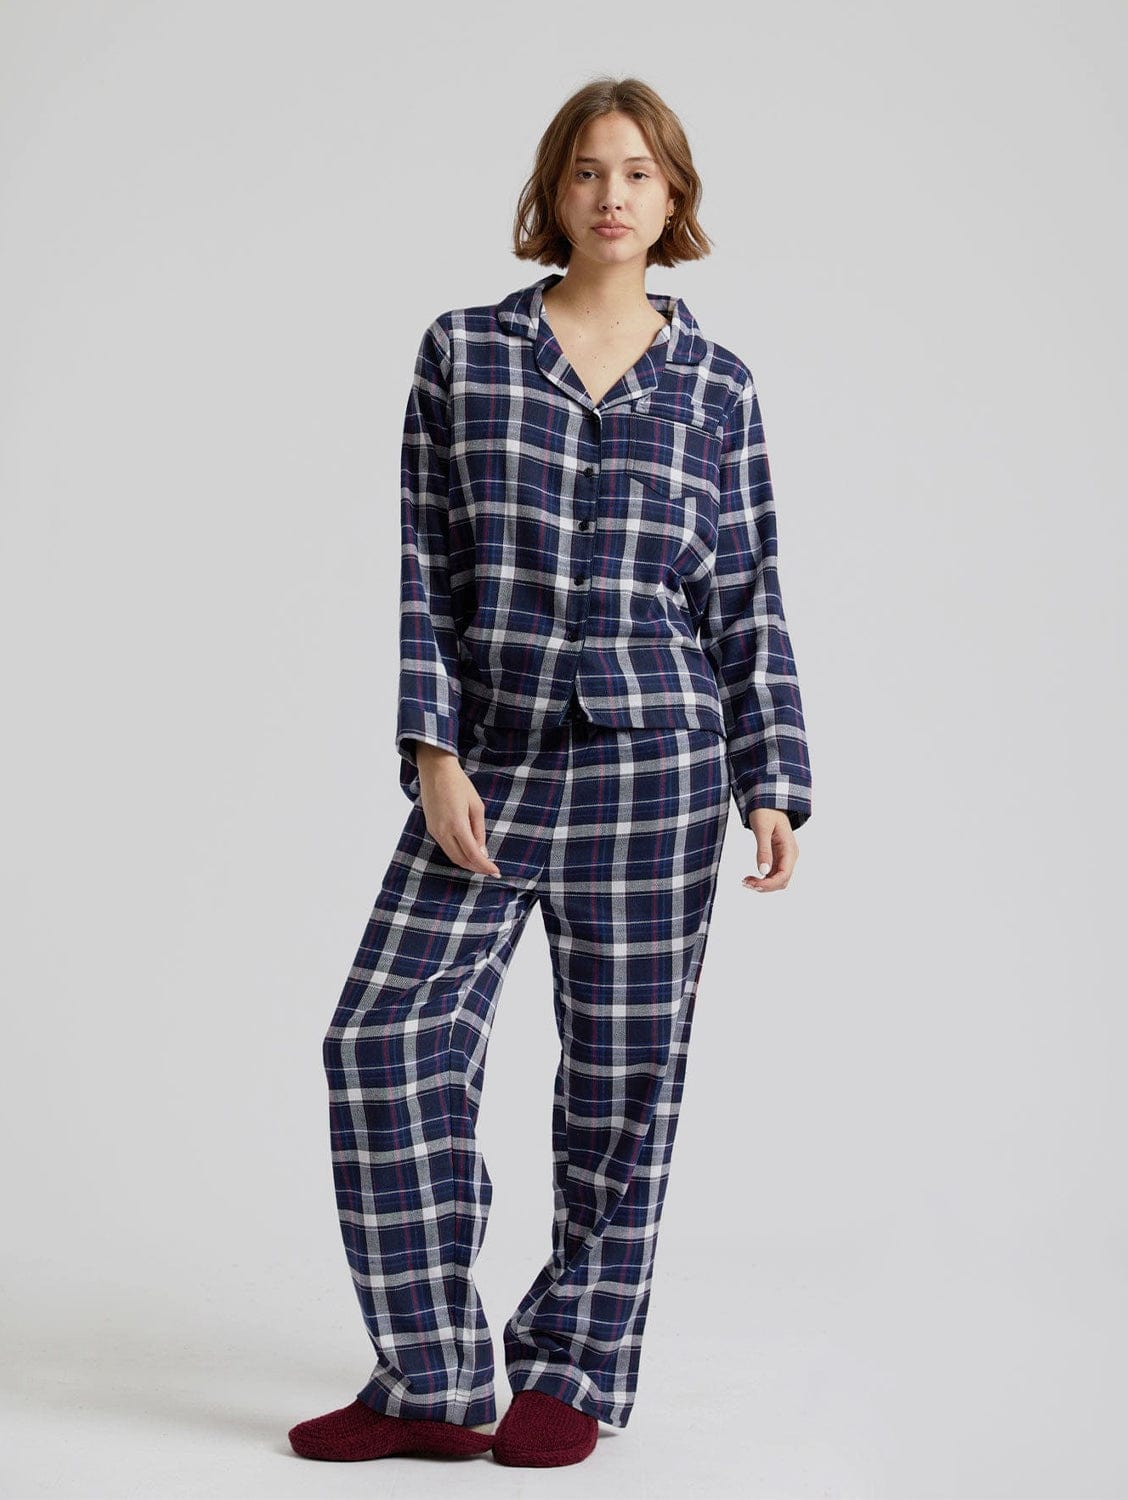 KOMODO Jim Jam Womens GOTS Organic Cotton Pyjama Set | Dark Navy UK8 / EU36 / US4